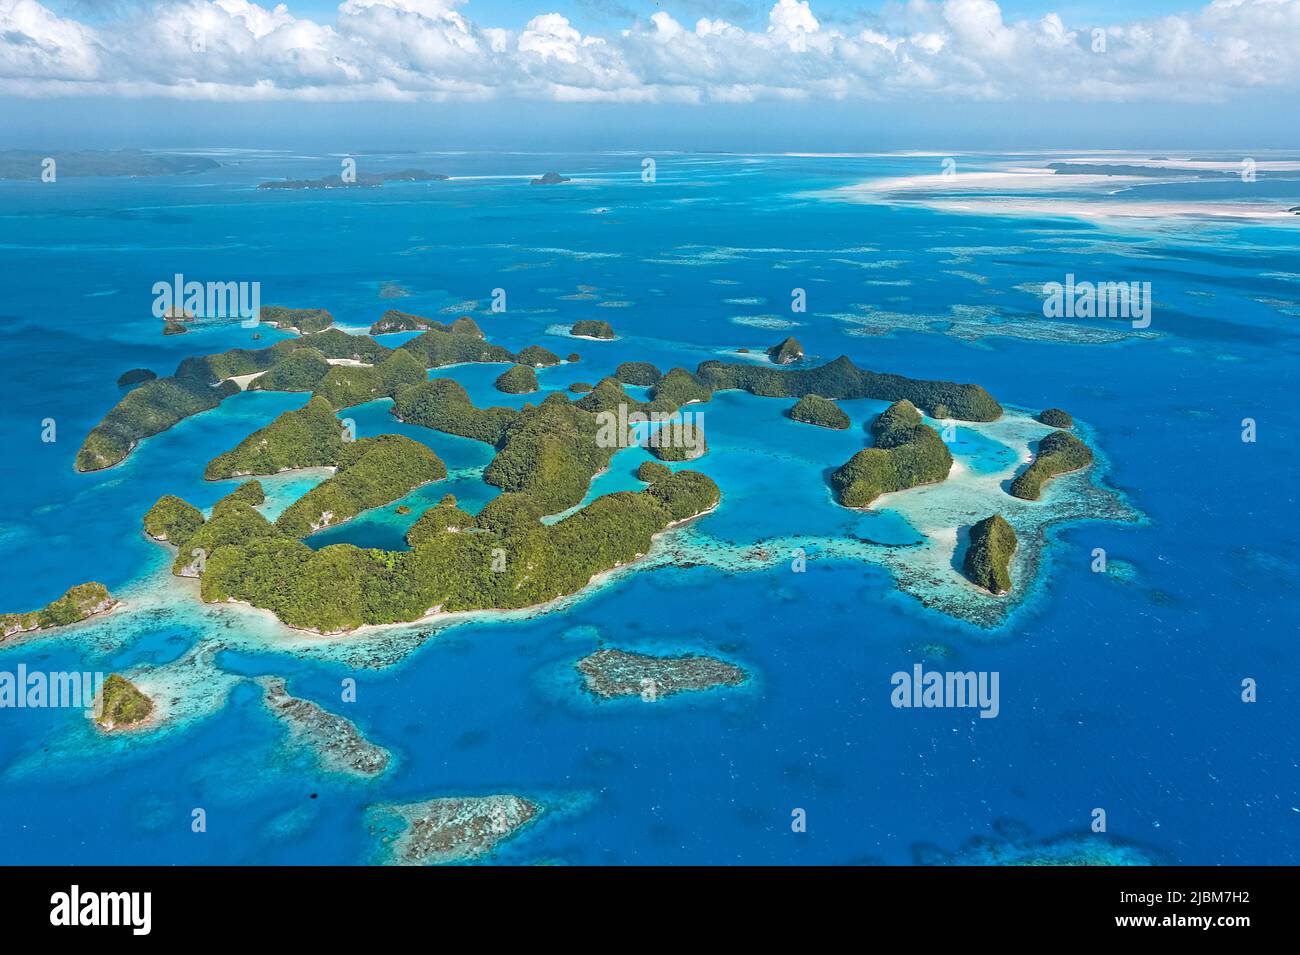 Vista aérea, islas y arrecifes de coral de Palau, Micronesia, Océano Pacífico, Asia Foto de stock